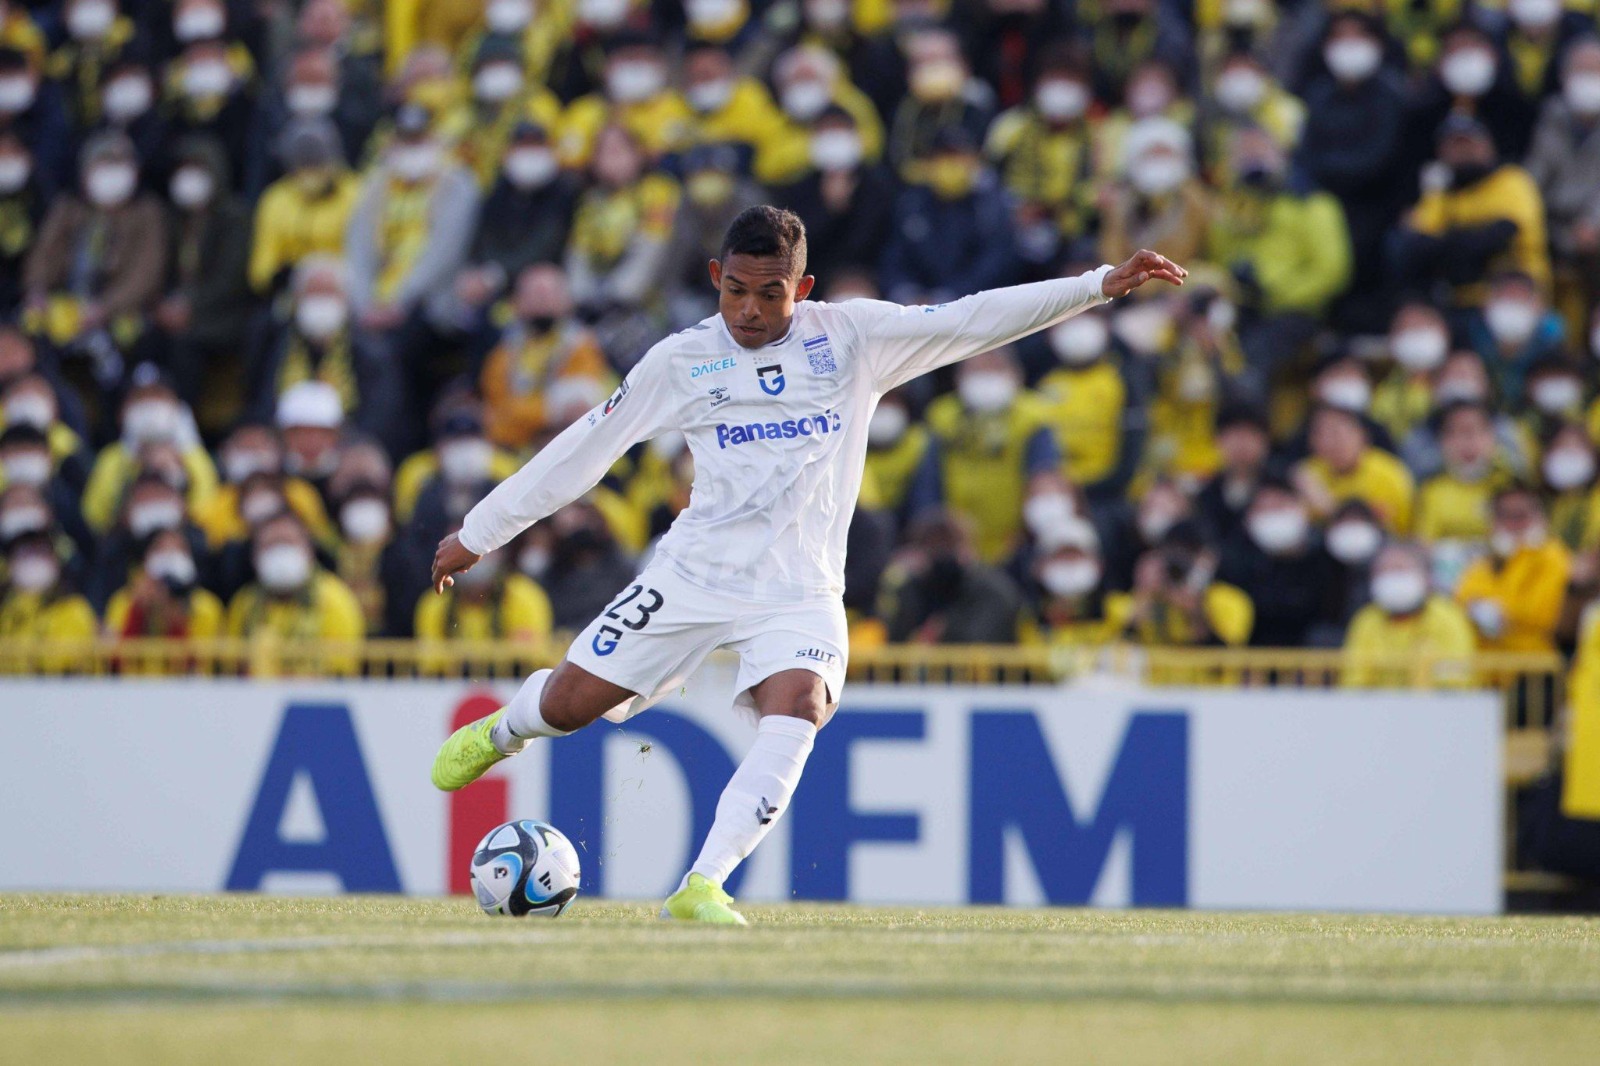  Dawhan marca na abertura da J-League e celebra: “Muito bom começar a temporada fazendo gol”